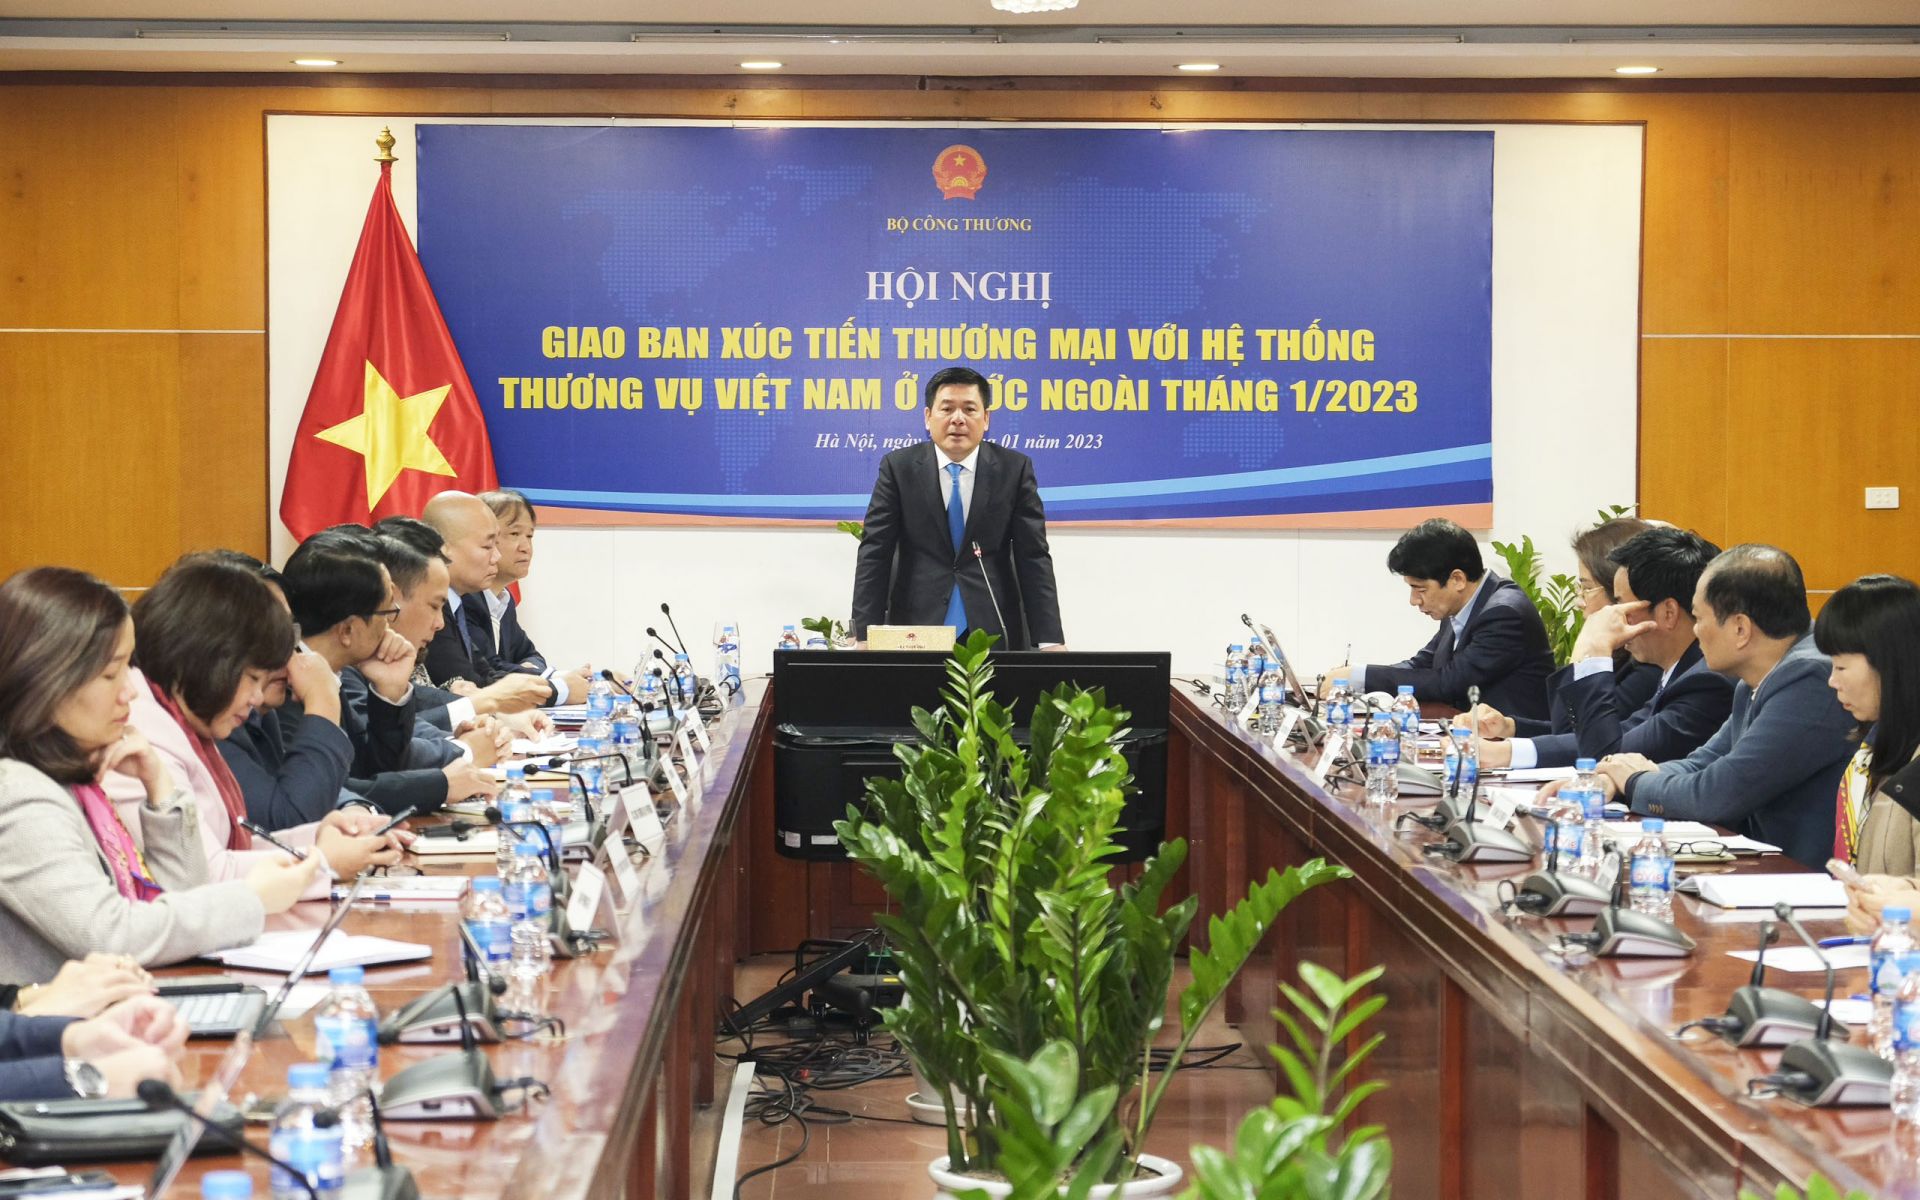 Hội nghị giao ban Xúc tiến thương mại với hệ thống Thương vụ Việt Nam ở nước ngoài tháng 1/2023 thu hút hơn 500 đại biểu tham dự theo hình thức trực tiếp kết hợp trực tuyến